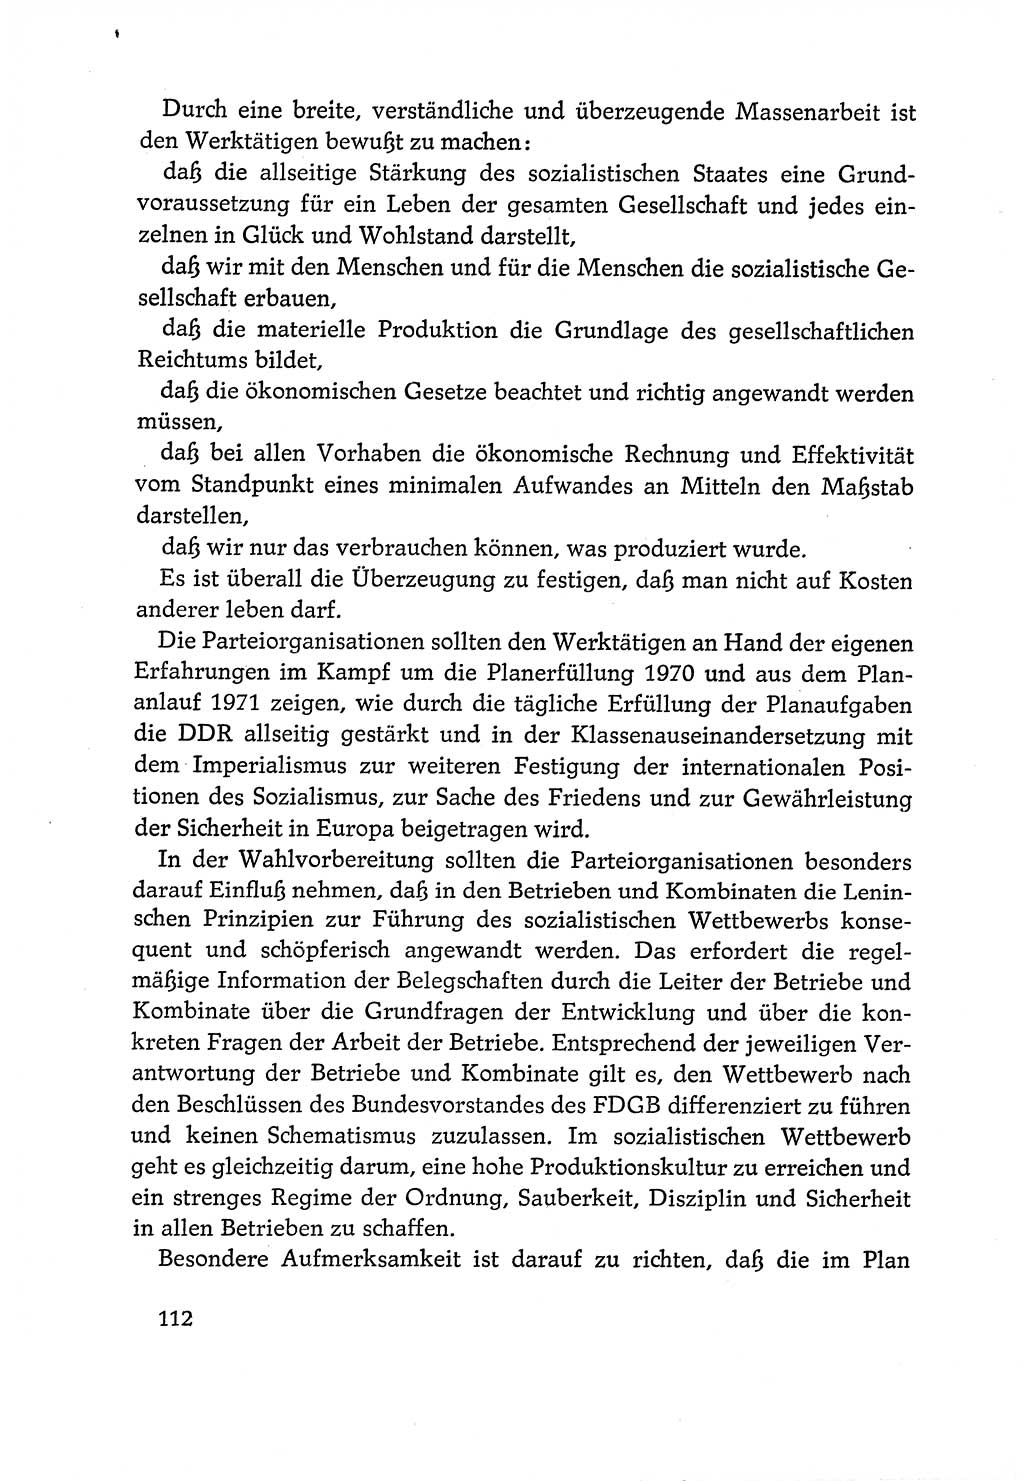 Dokumente der Sozialistischen Einheitspartei Deutschlands (SED) [Deutsche Demokratische Republik (DDR)] 1970-1971, Seite 112 (Dok. SED DDR 1970-1971, S. 112)